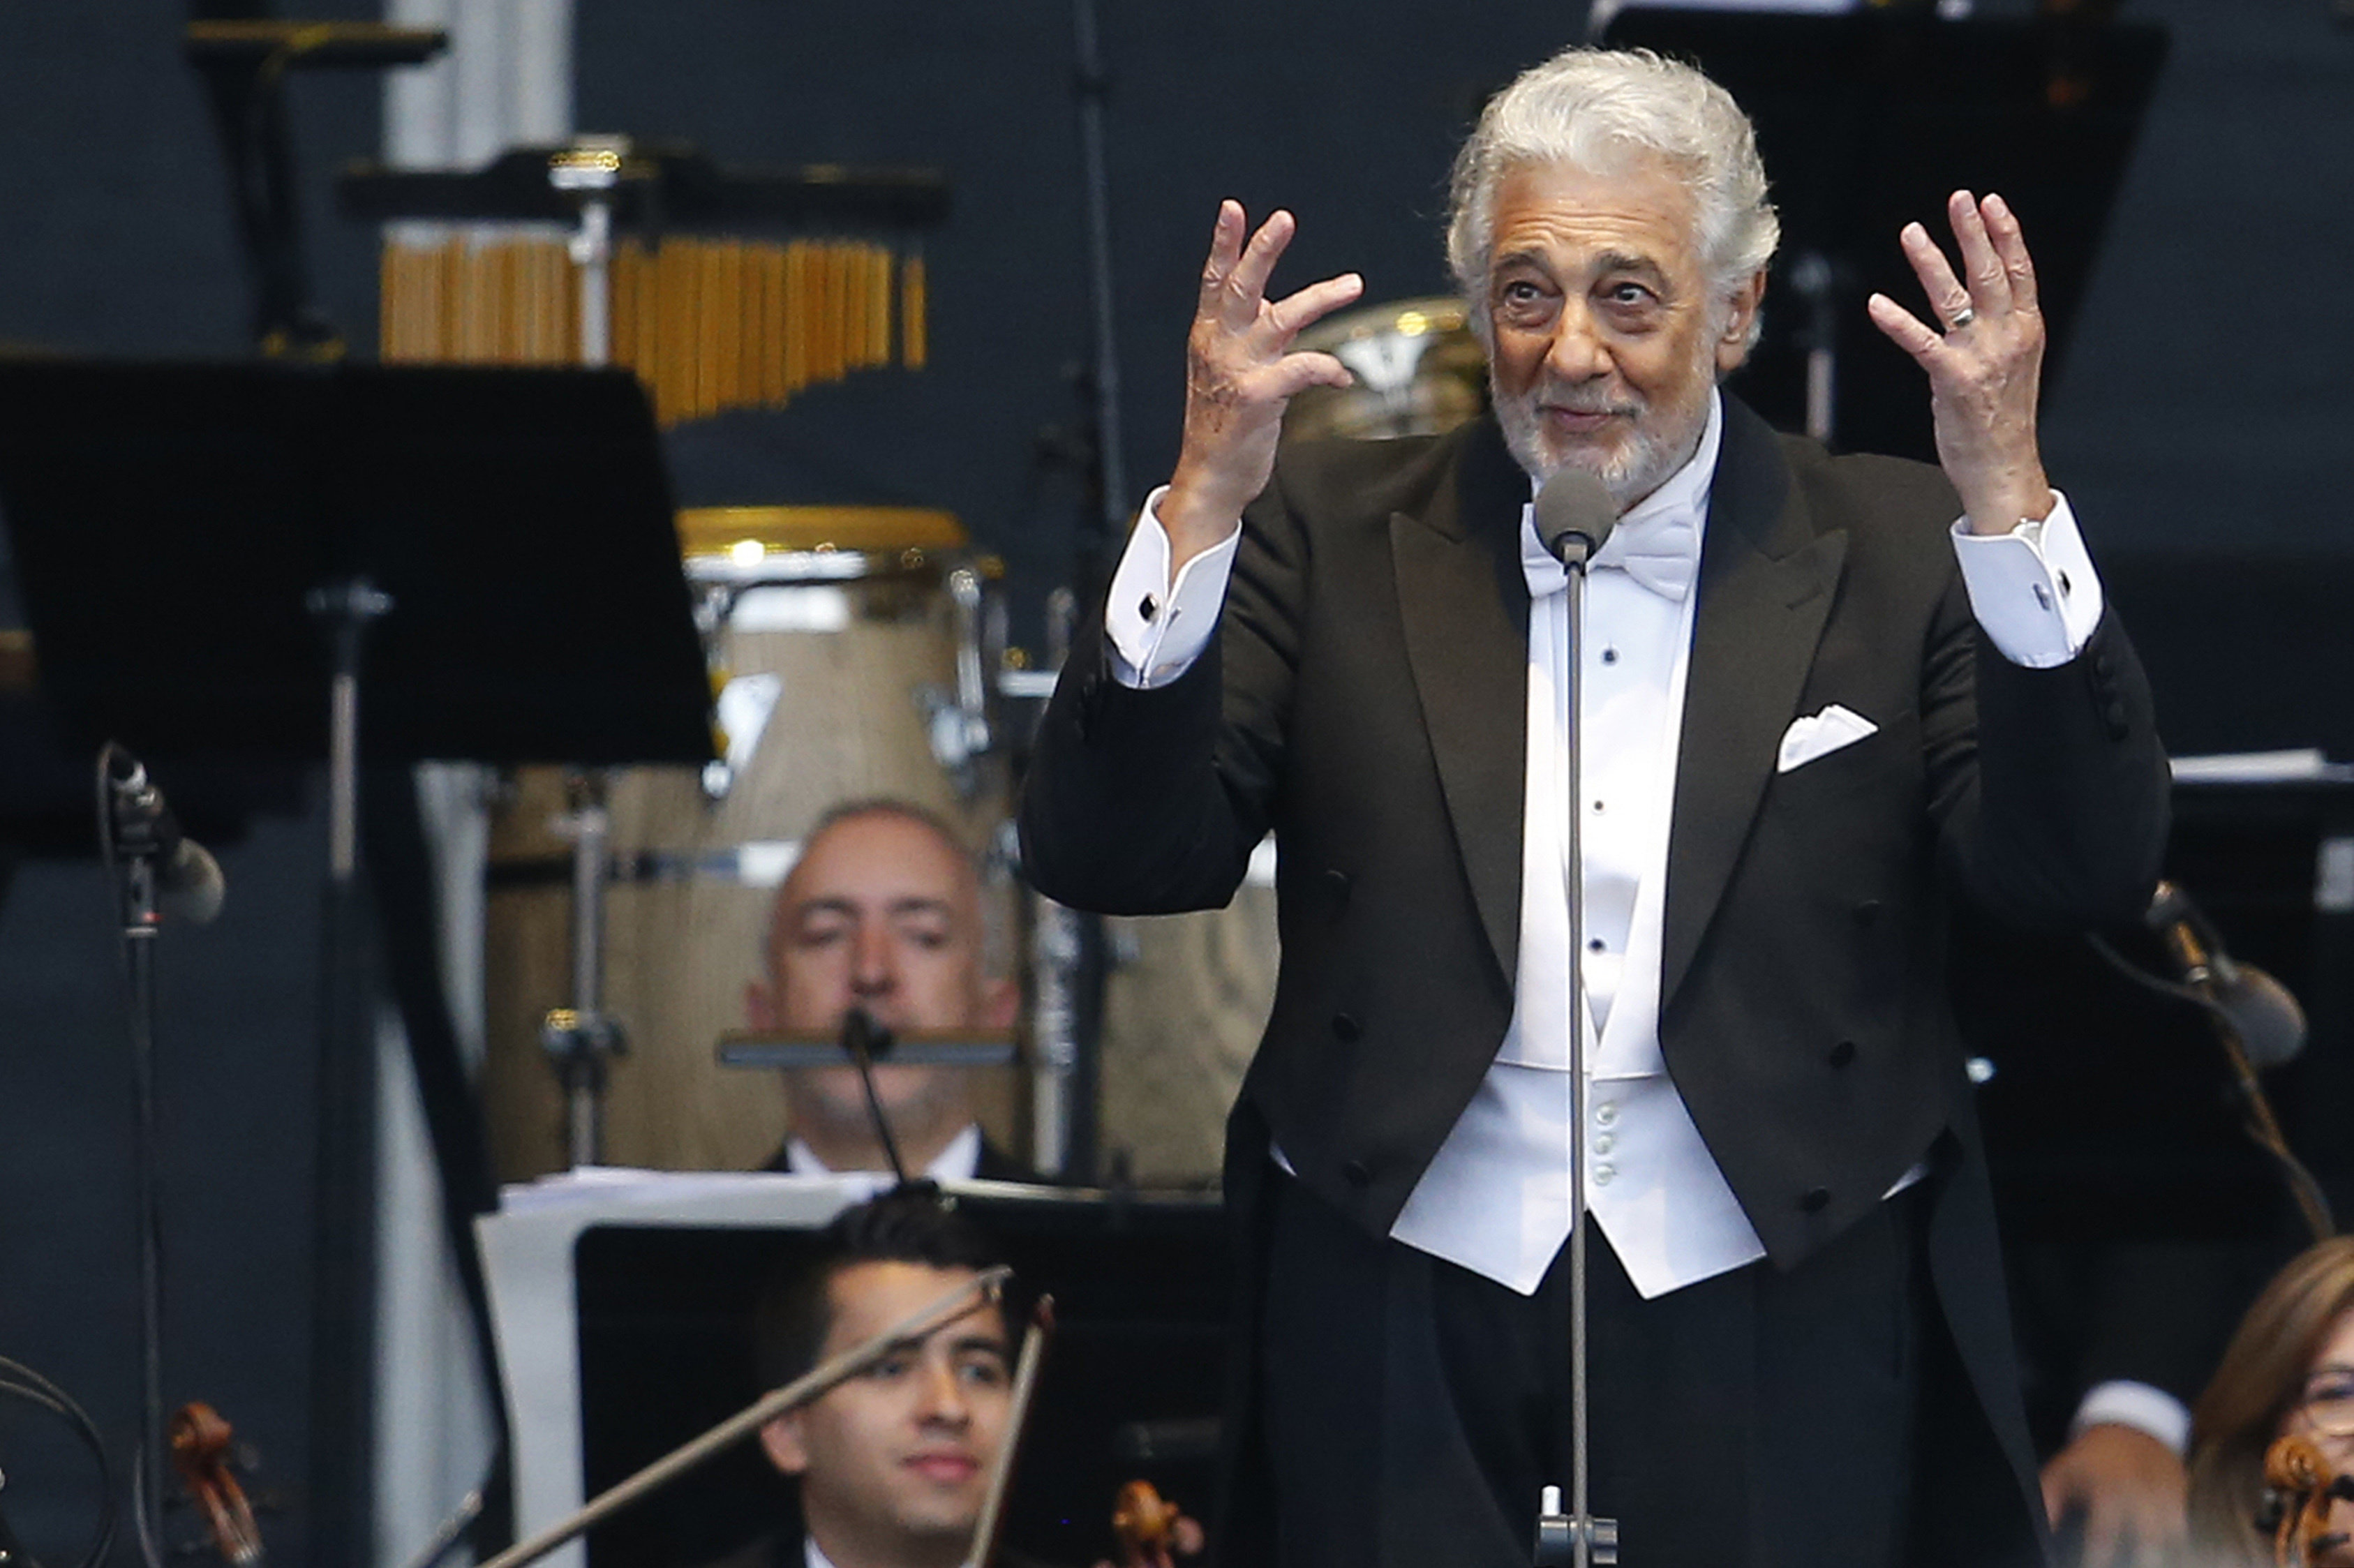  Plácido Domingo celebra 50 años en Chile con concierto masivo